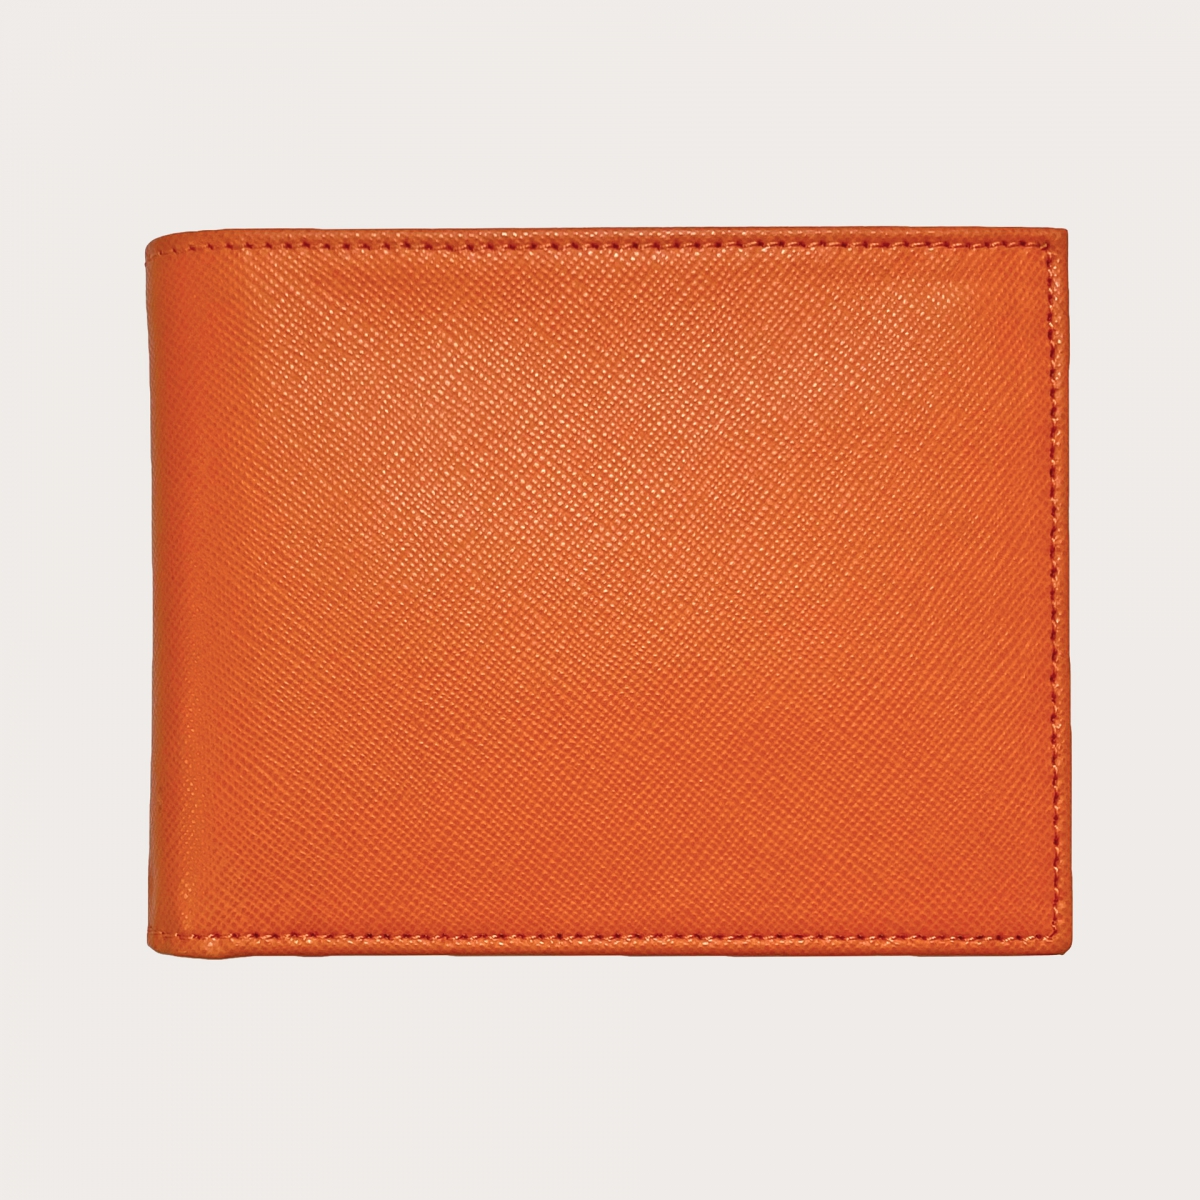 Italian Leather Orange Wallet, Orange Leather Wallet